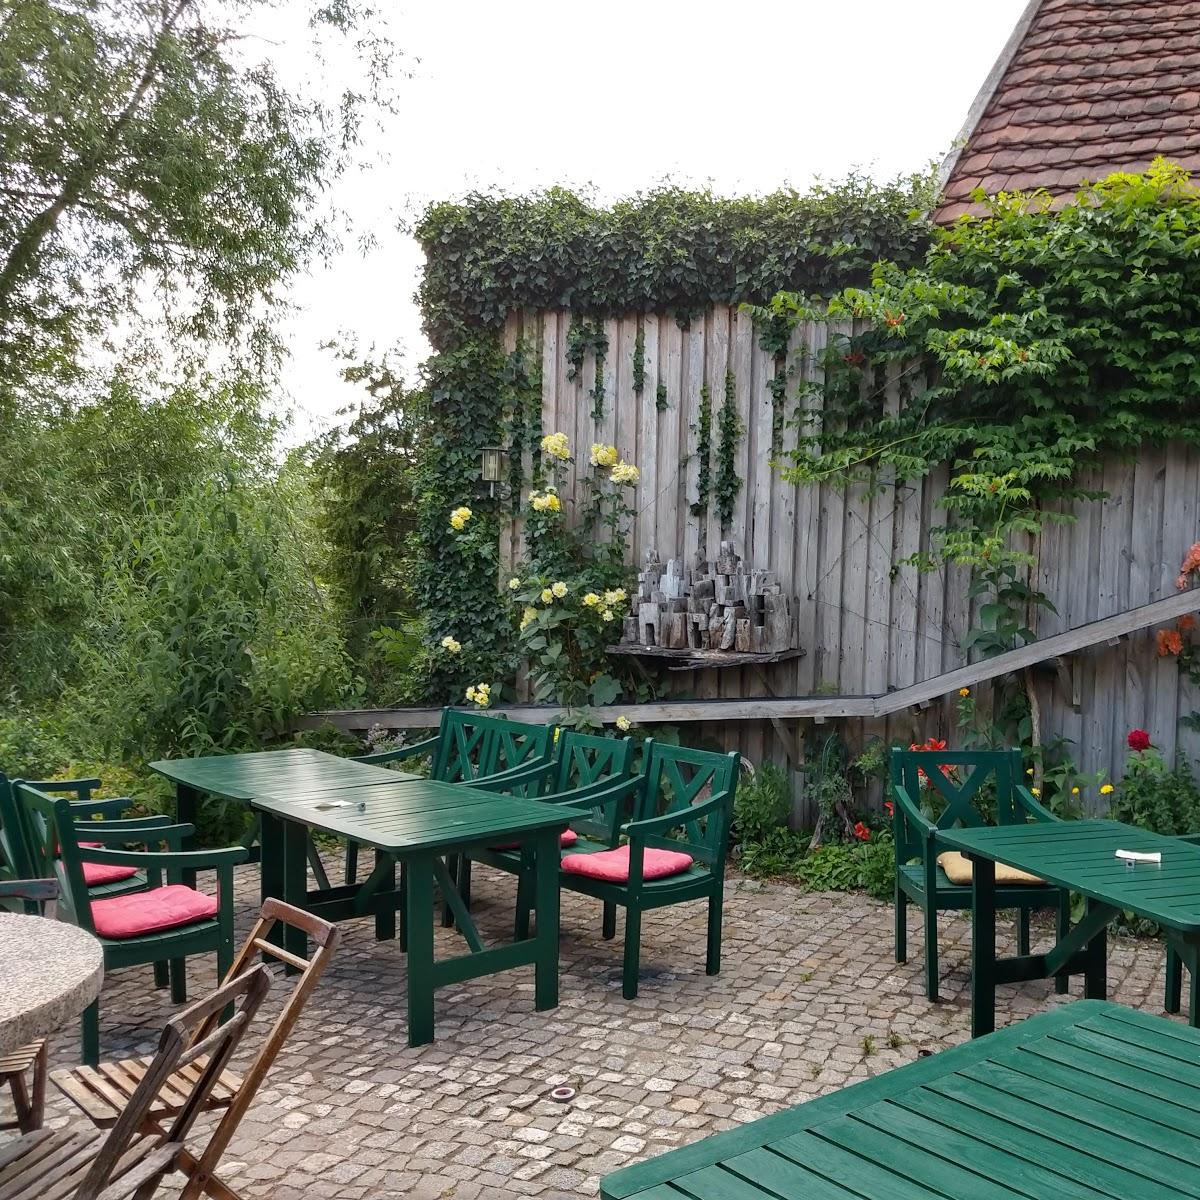 Restaurant "Gaststube,, Alte Zunft,," in  Dömitz